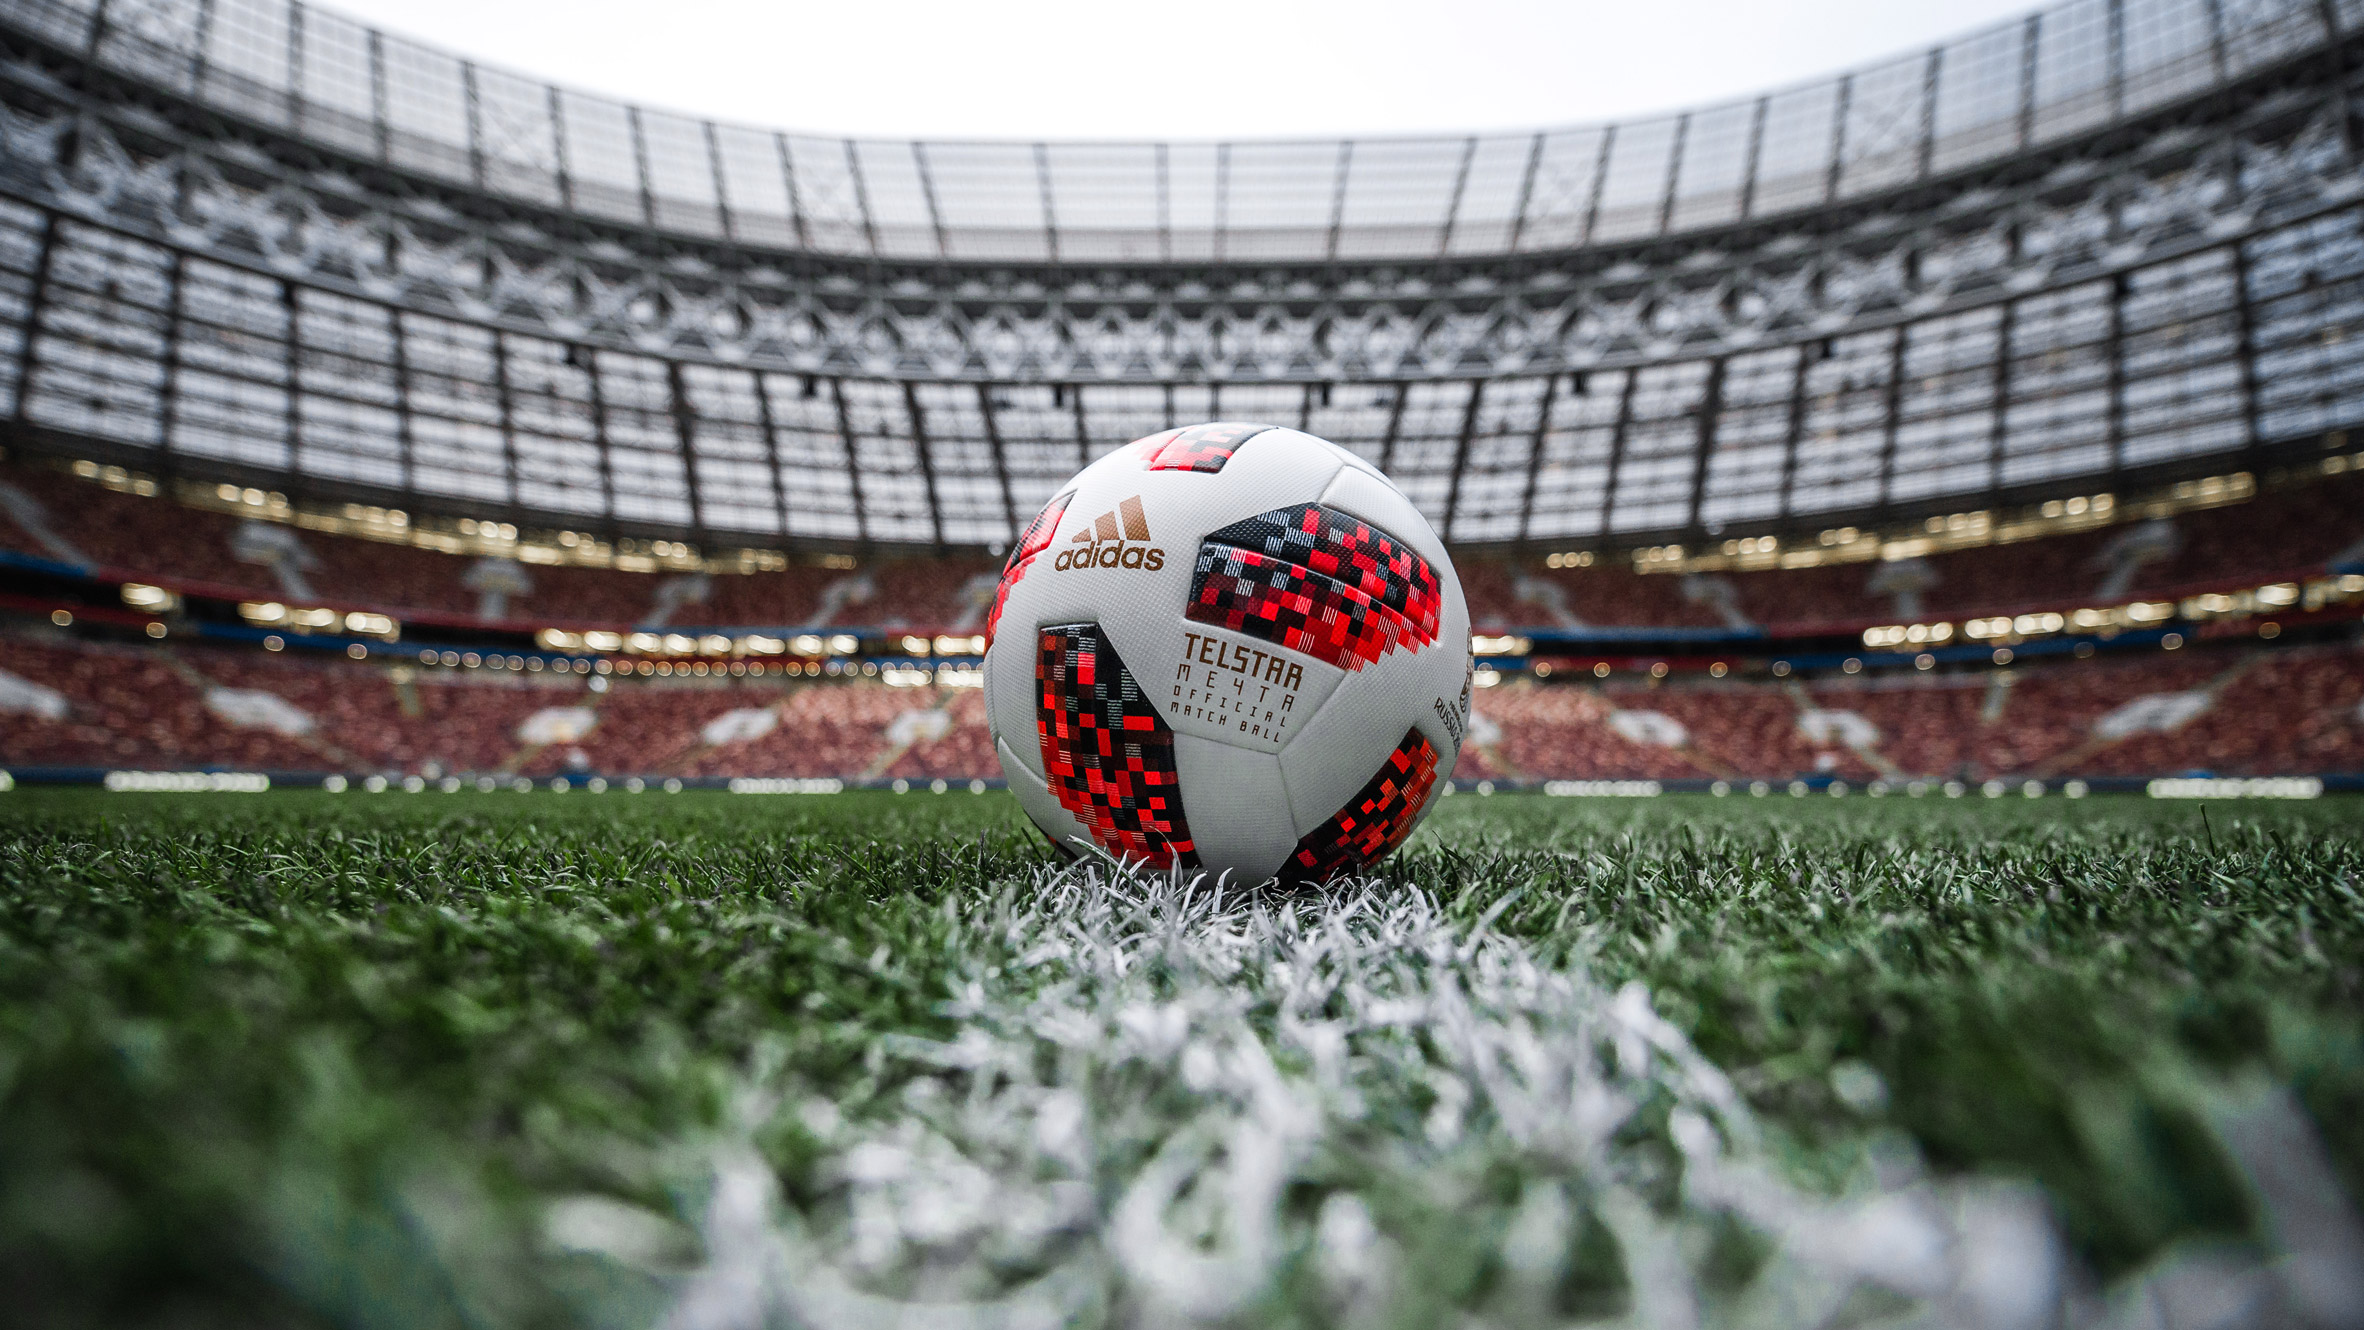 adidas world cup 2018 official match soccer ball